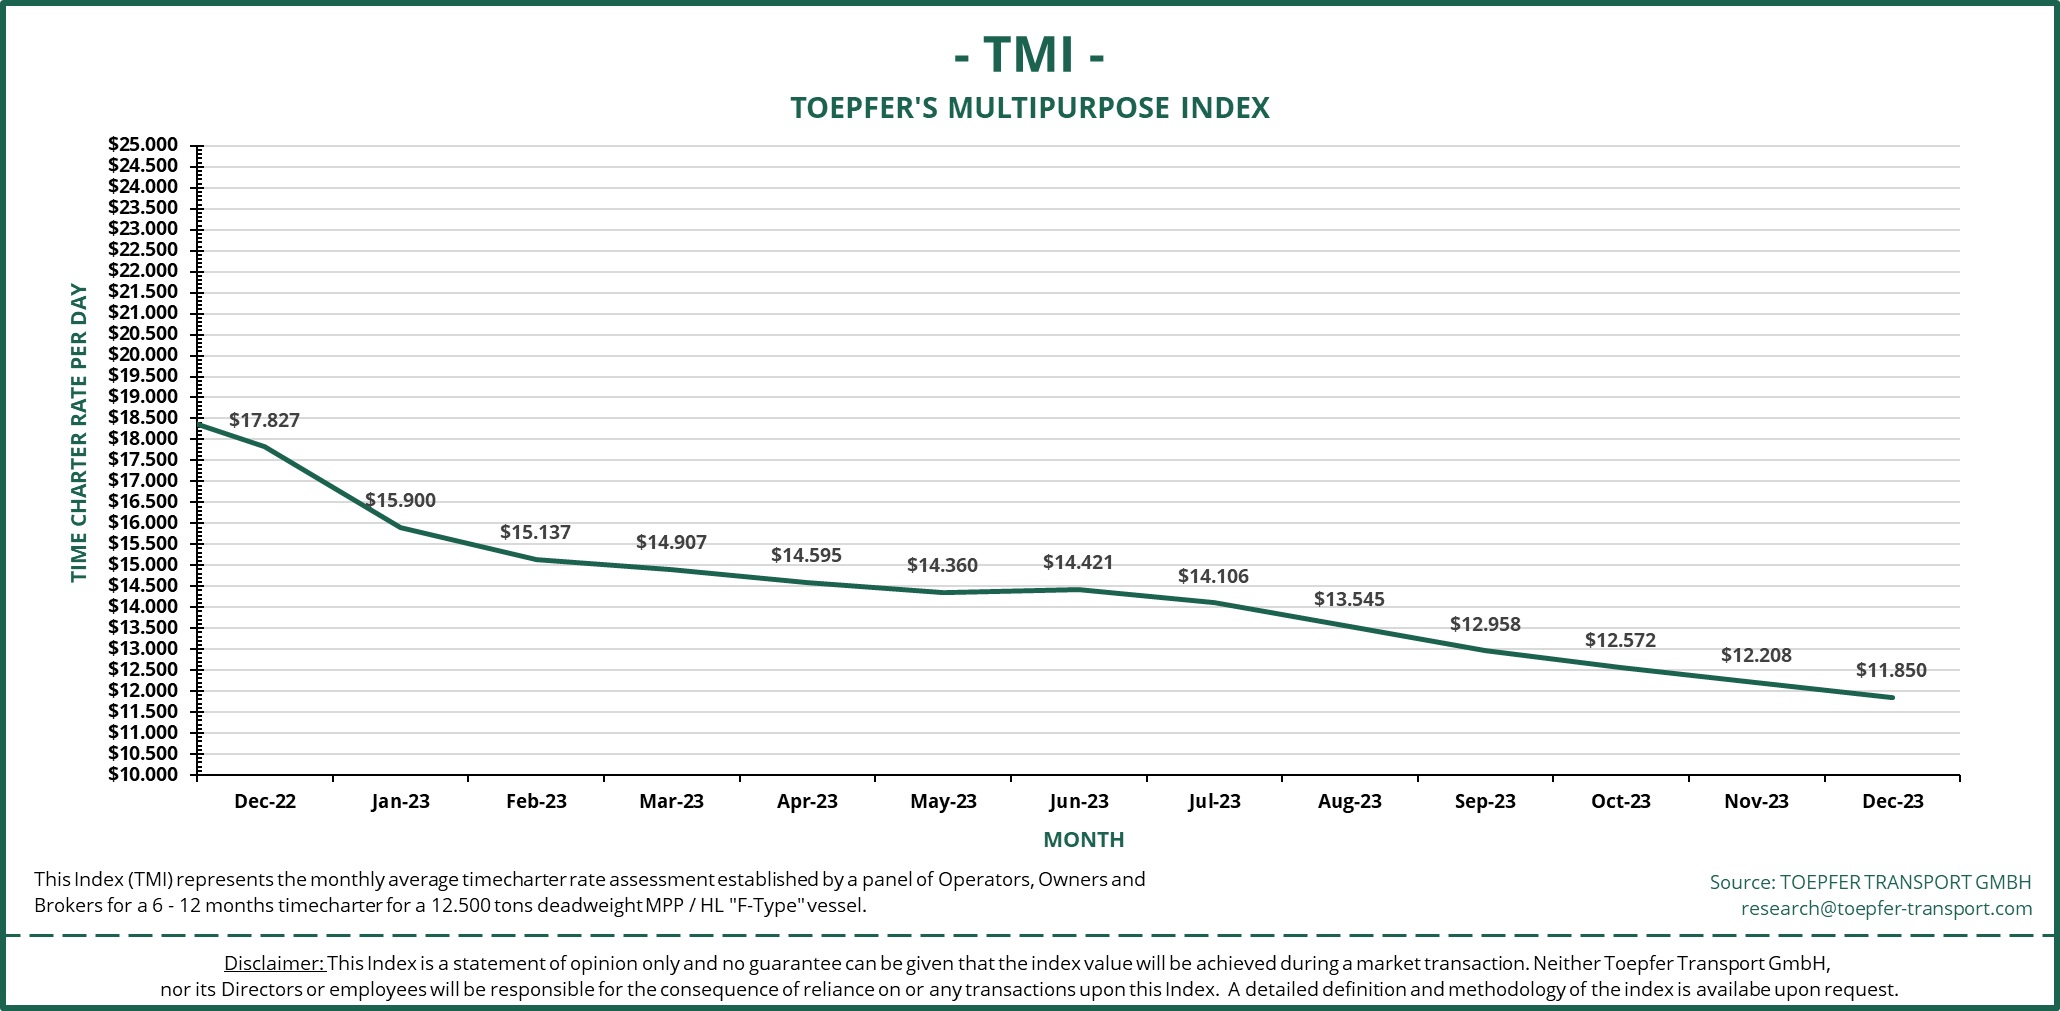 Toepfer Transport Multipurpose Index